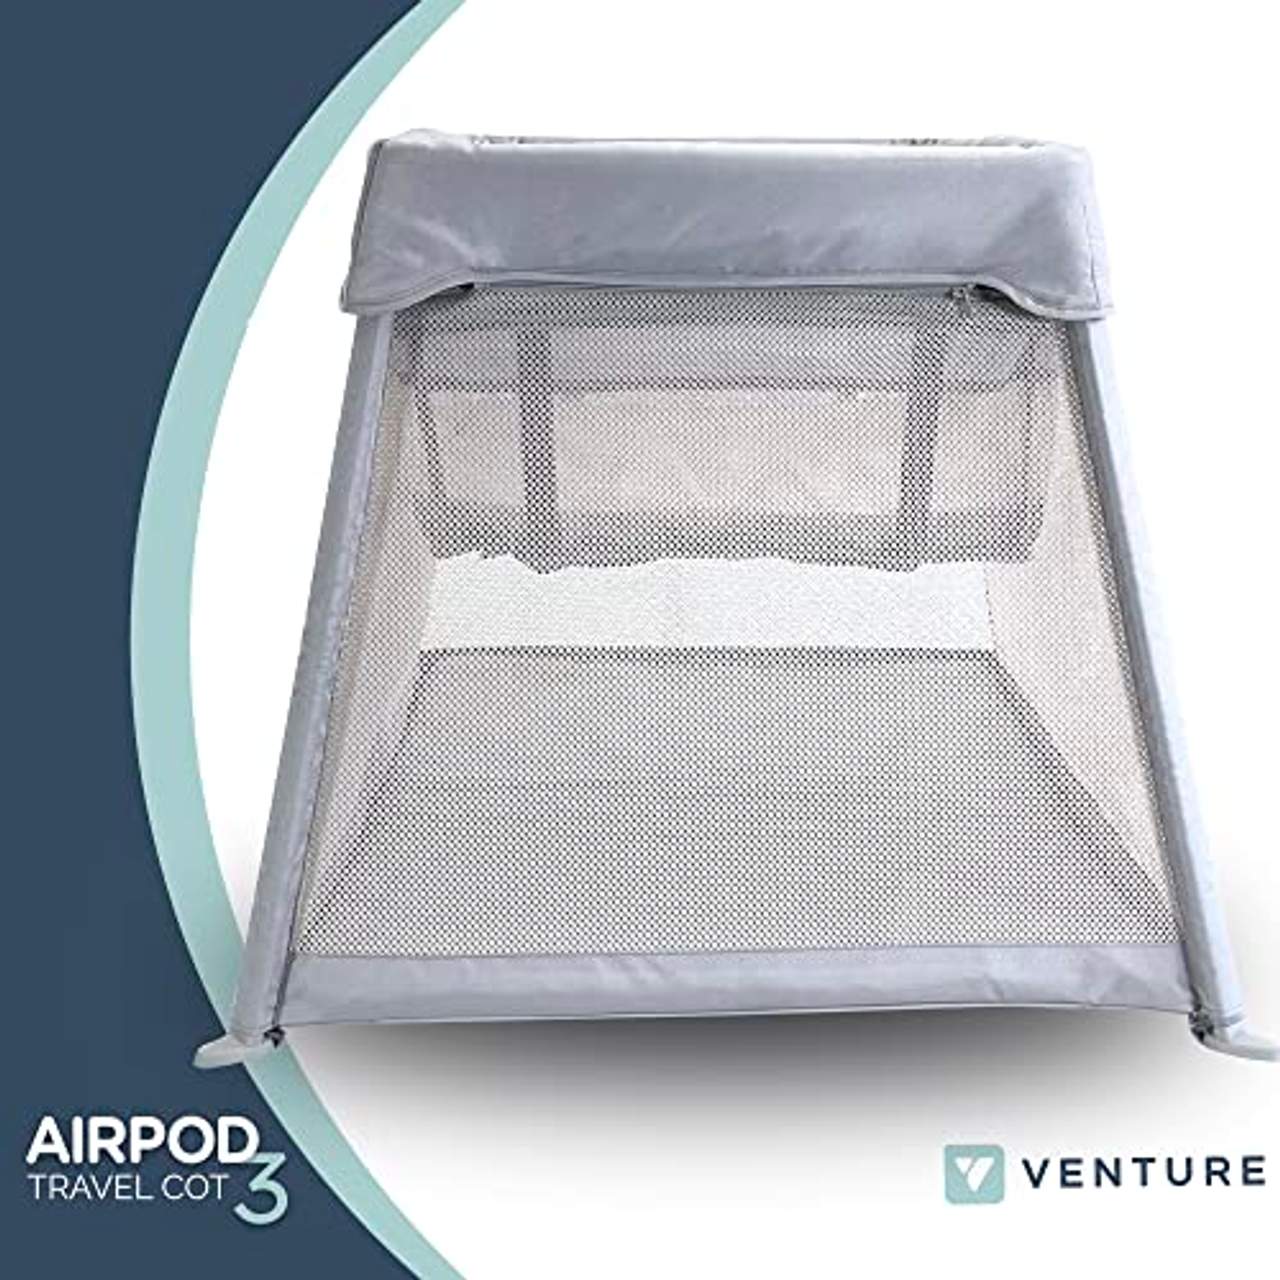 Venture Airpod Reisebett inkl. Schaumstoffmatratze und Tragetasche